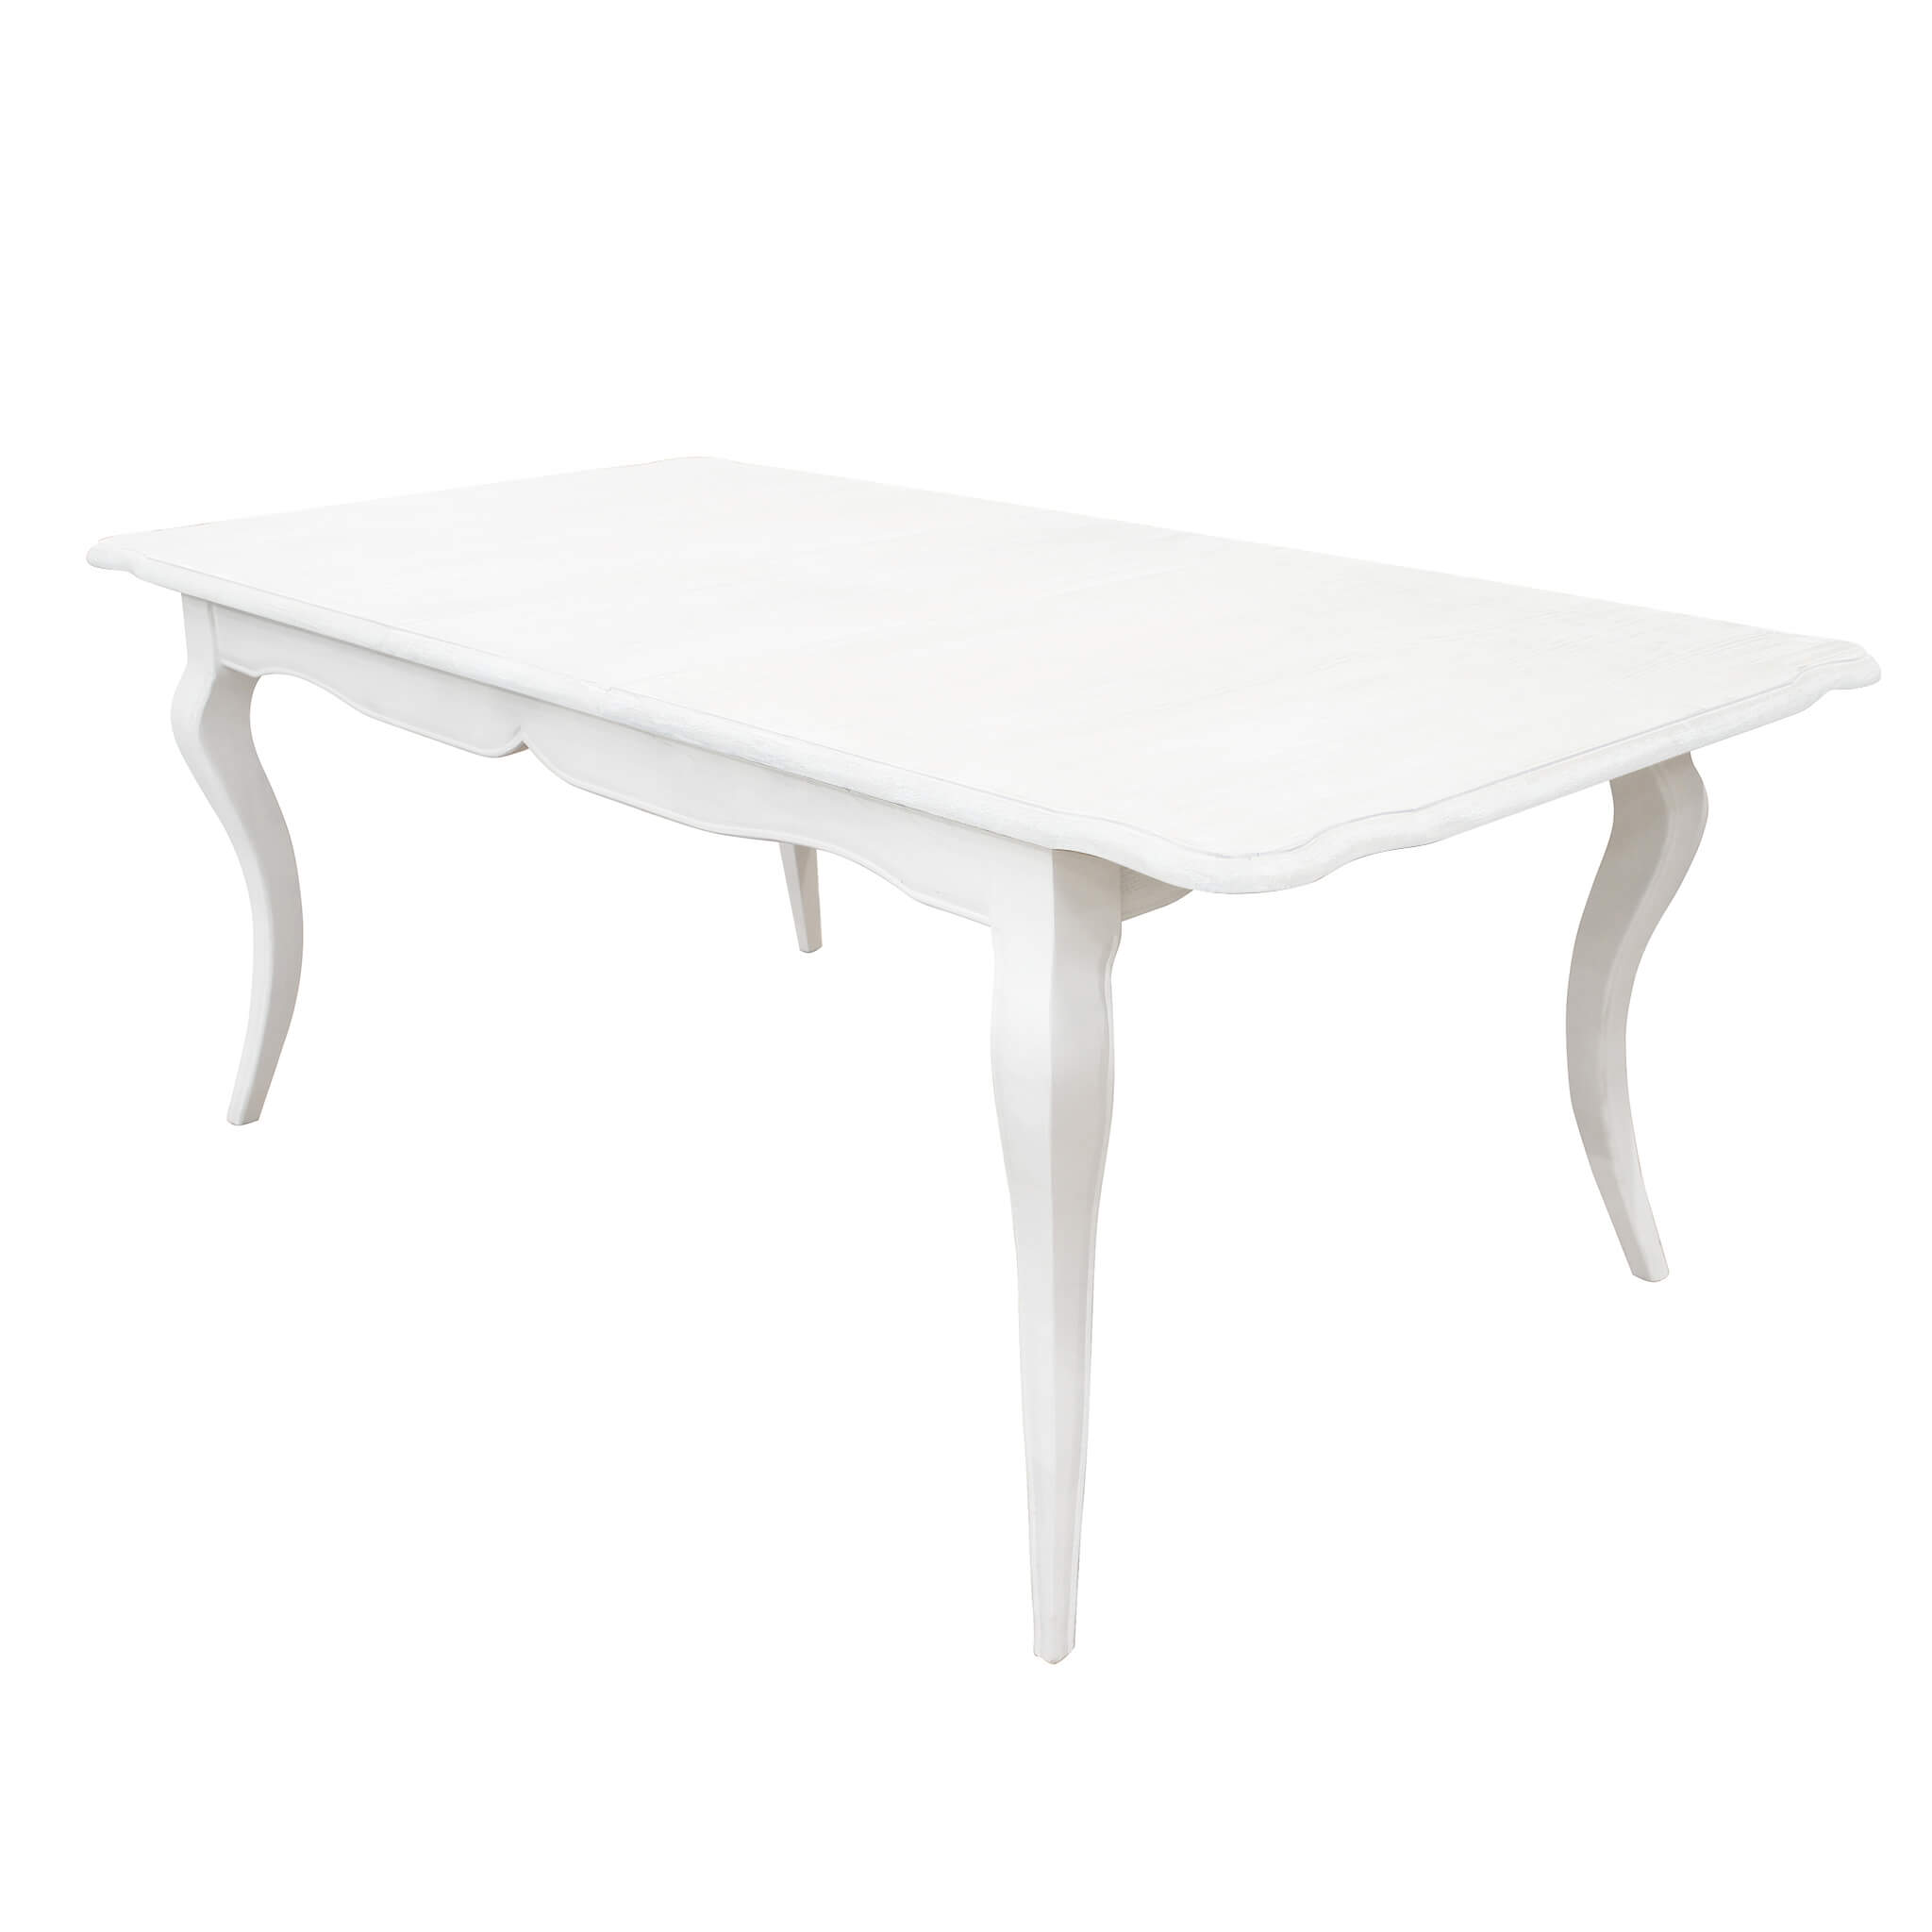 Milani Home tavolo in legno massiccio di design moderno industrial cm 160 x 100 x 75 Bianco 160 x 76 x 100 cm